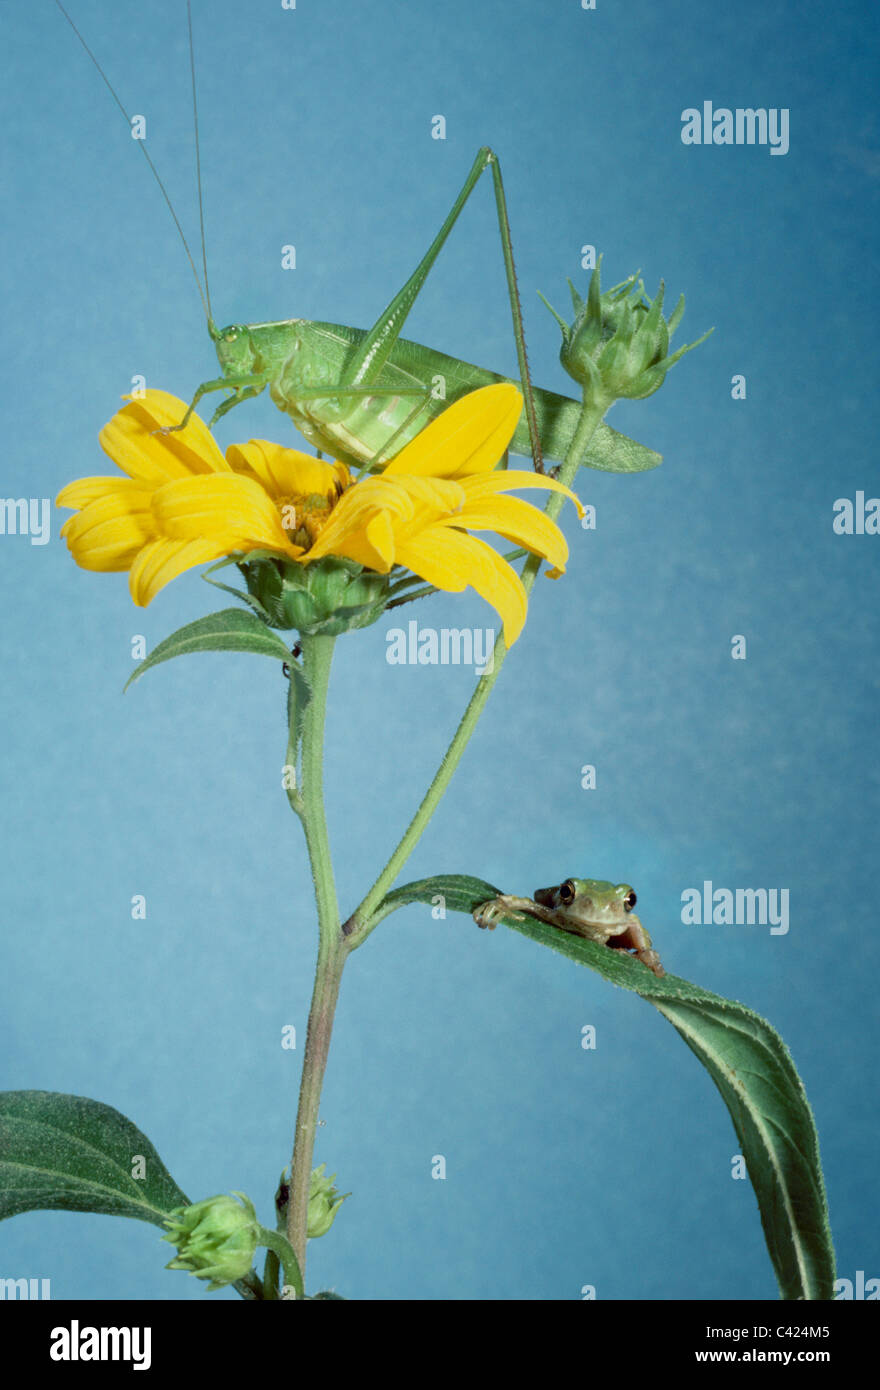 Amici - Grigio raganella (Hyla versicolor) e katydid (Tettigonia) condivisione di impianti e fiore di carciofo di Gerusalemme Foto Stock